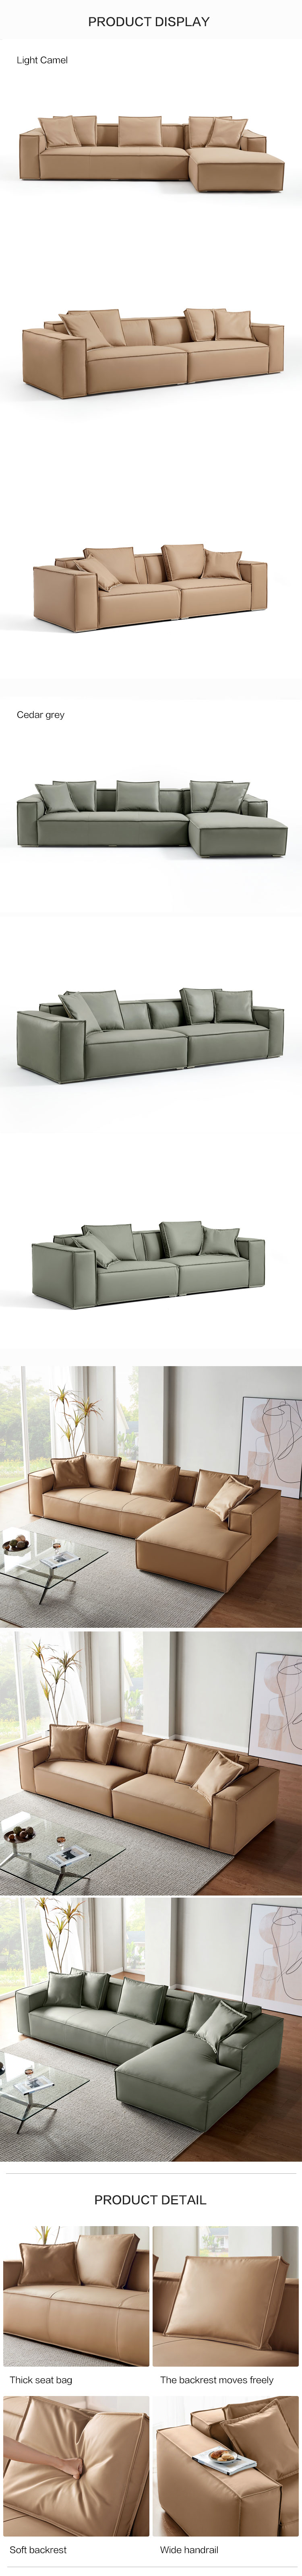 S240-A组合-商品详情750-双色沙发.jpg